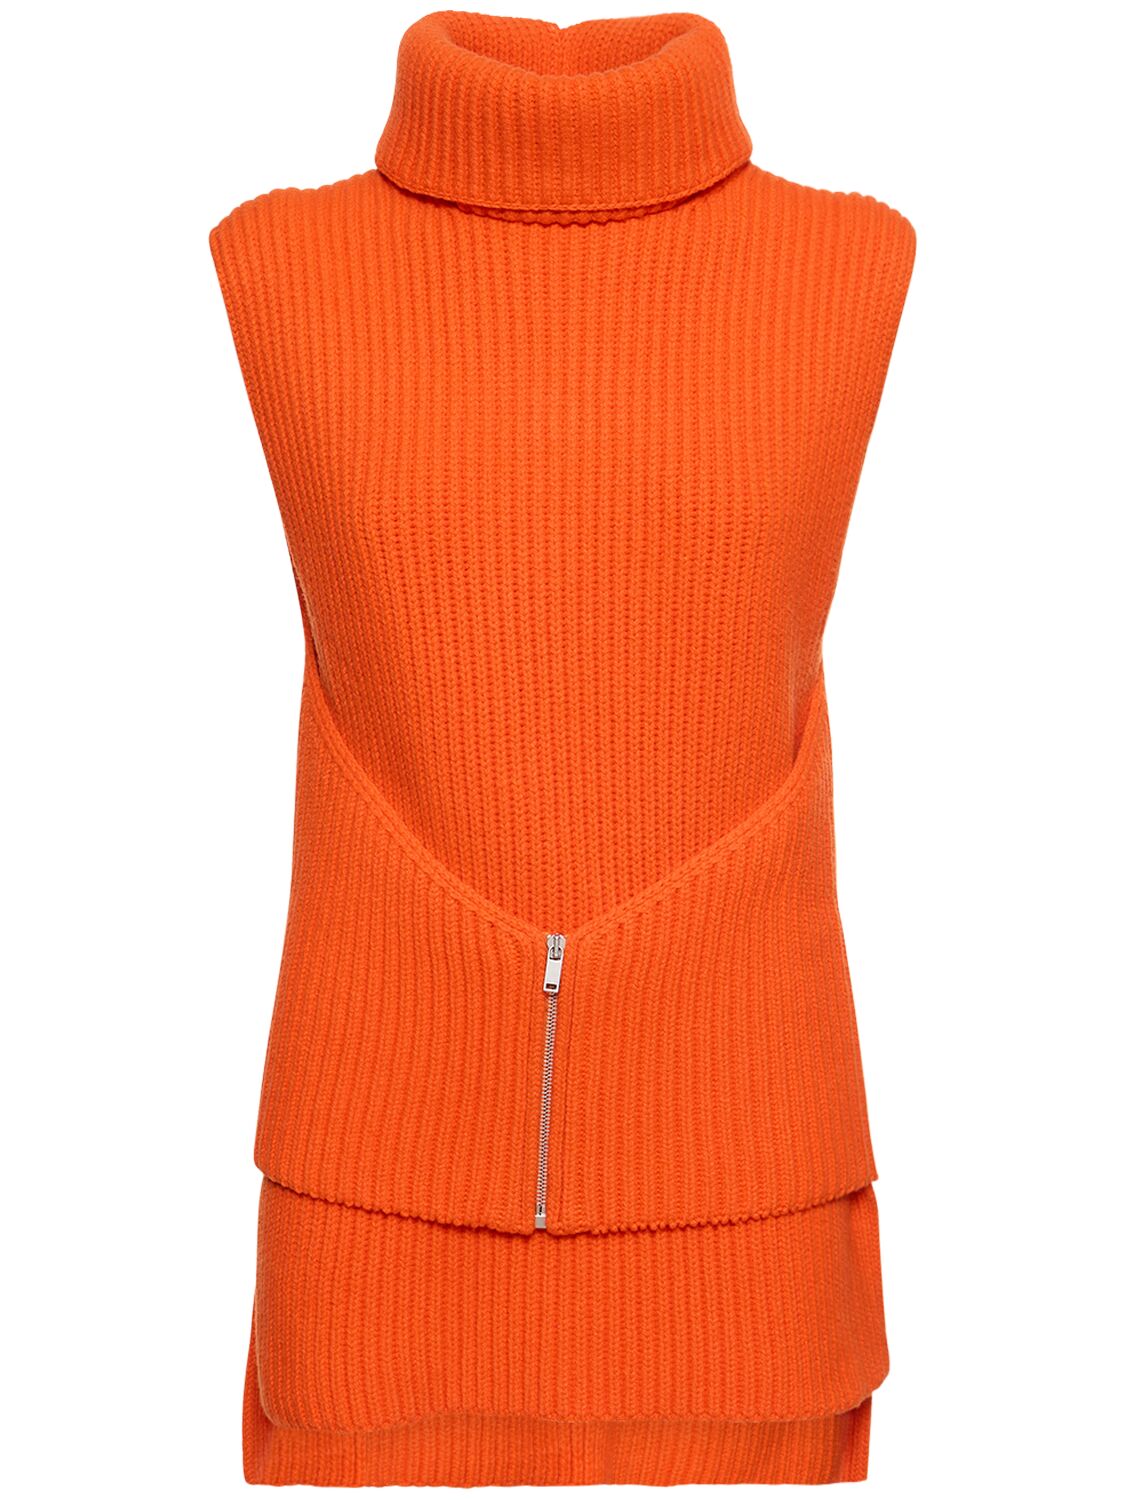 Jil Sander Knit Wool Vest W/ Zip Detail In Orange